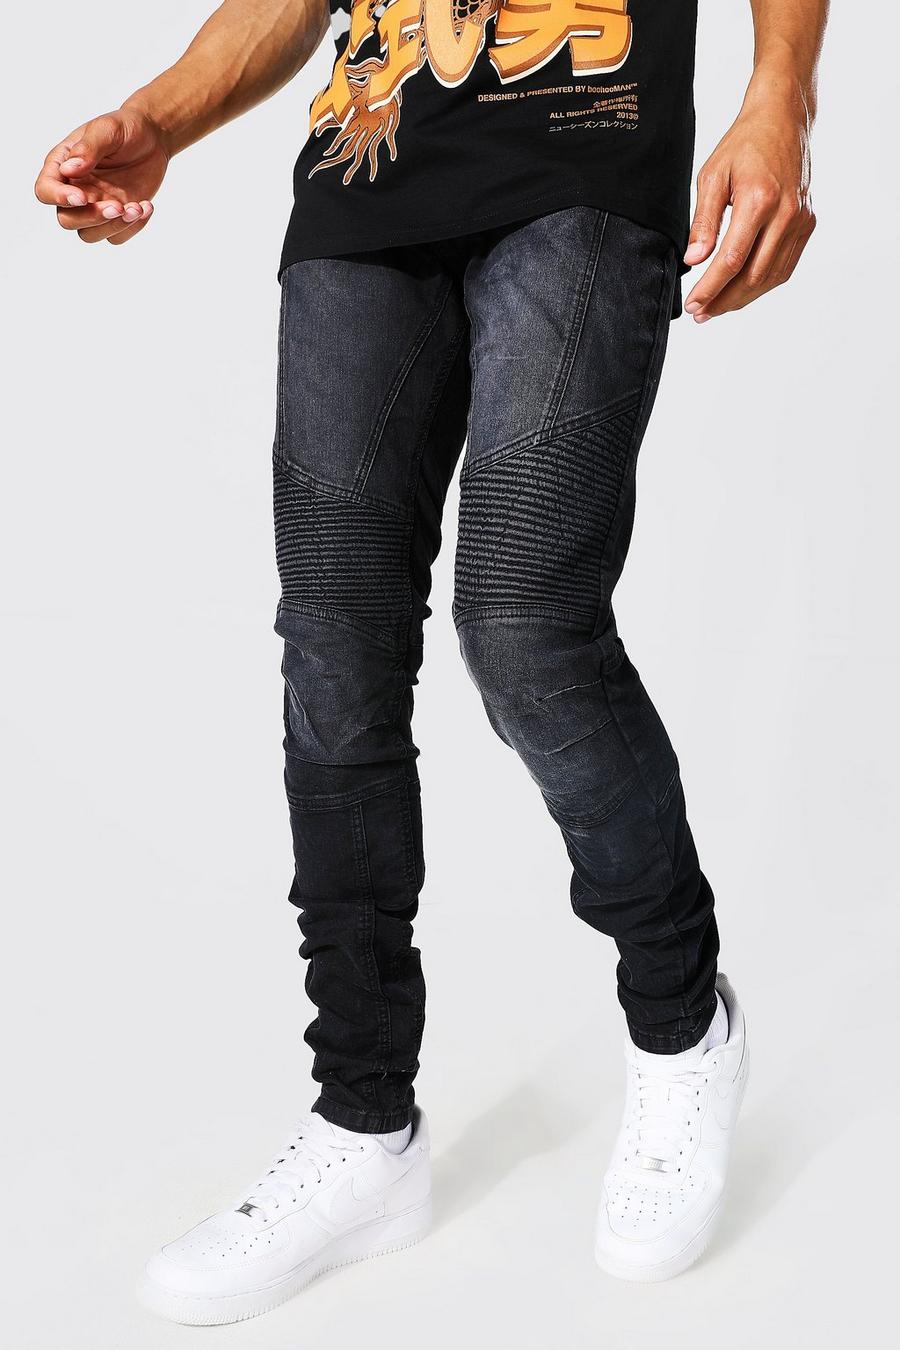 Jeans stile Biker Tall Skinny Fit, Black nero